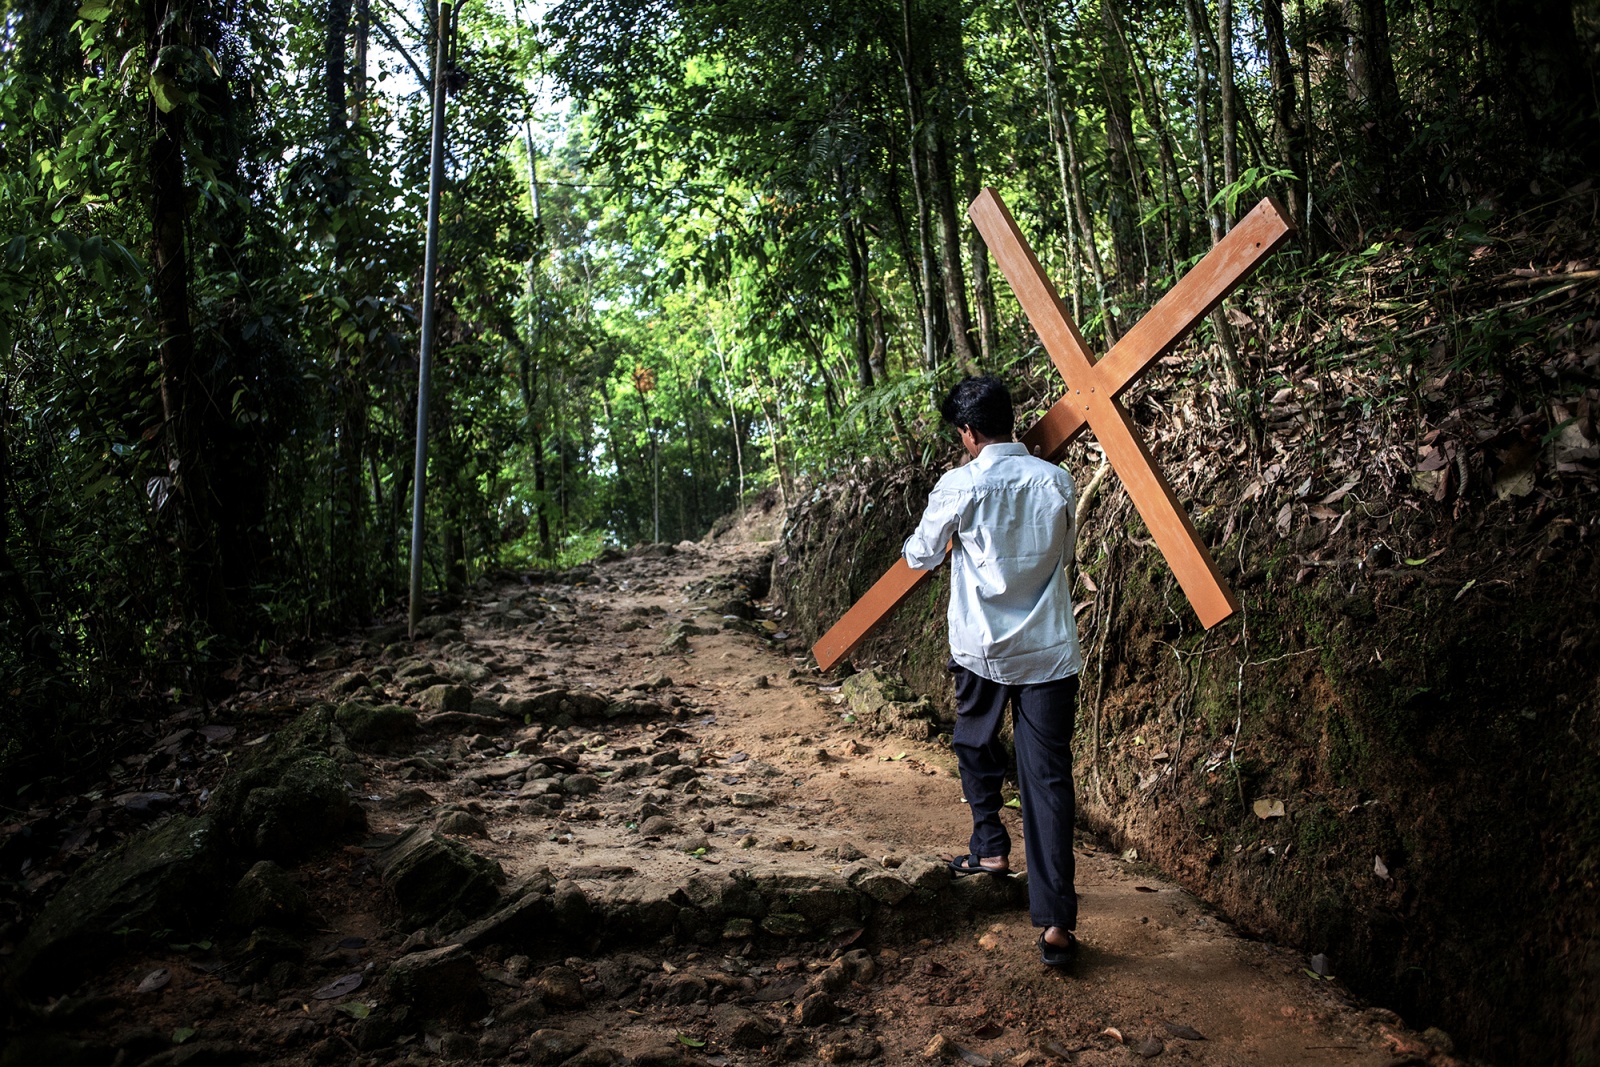 Catholic community in Sri Lanka